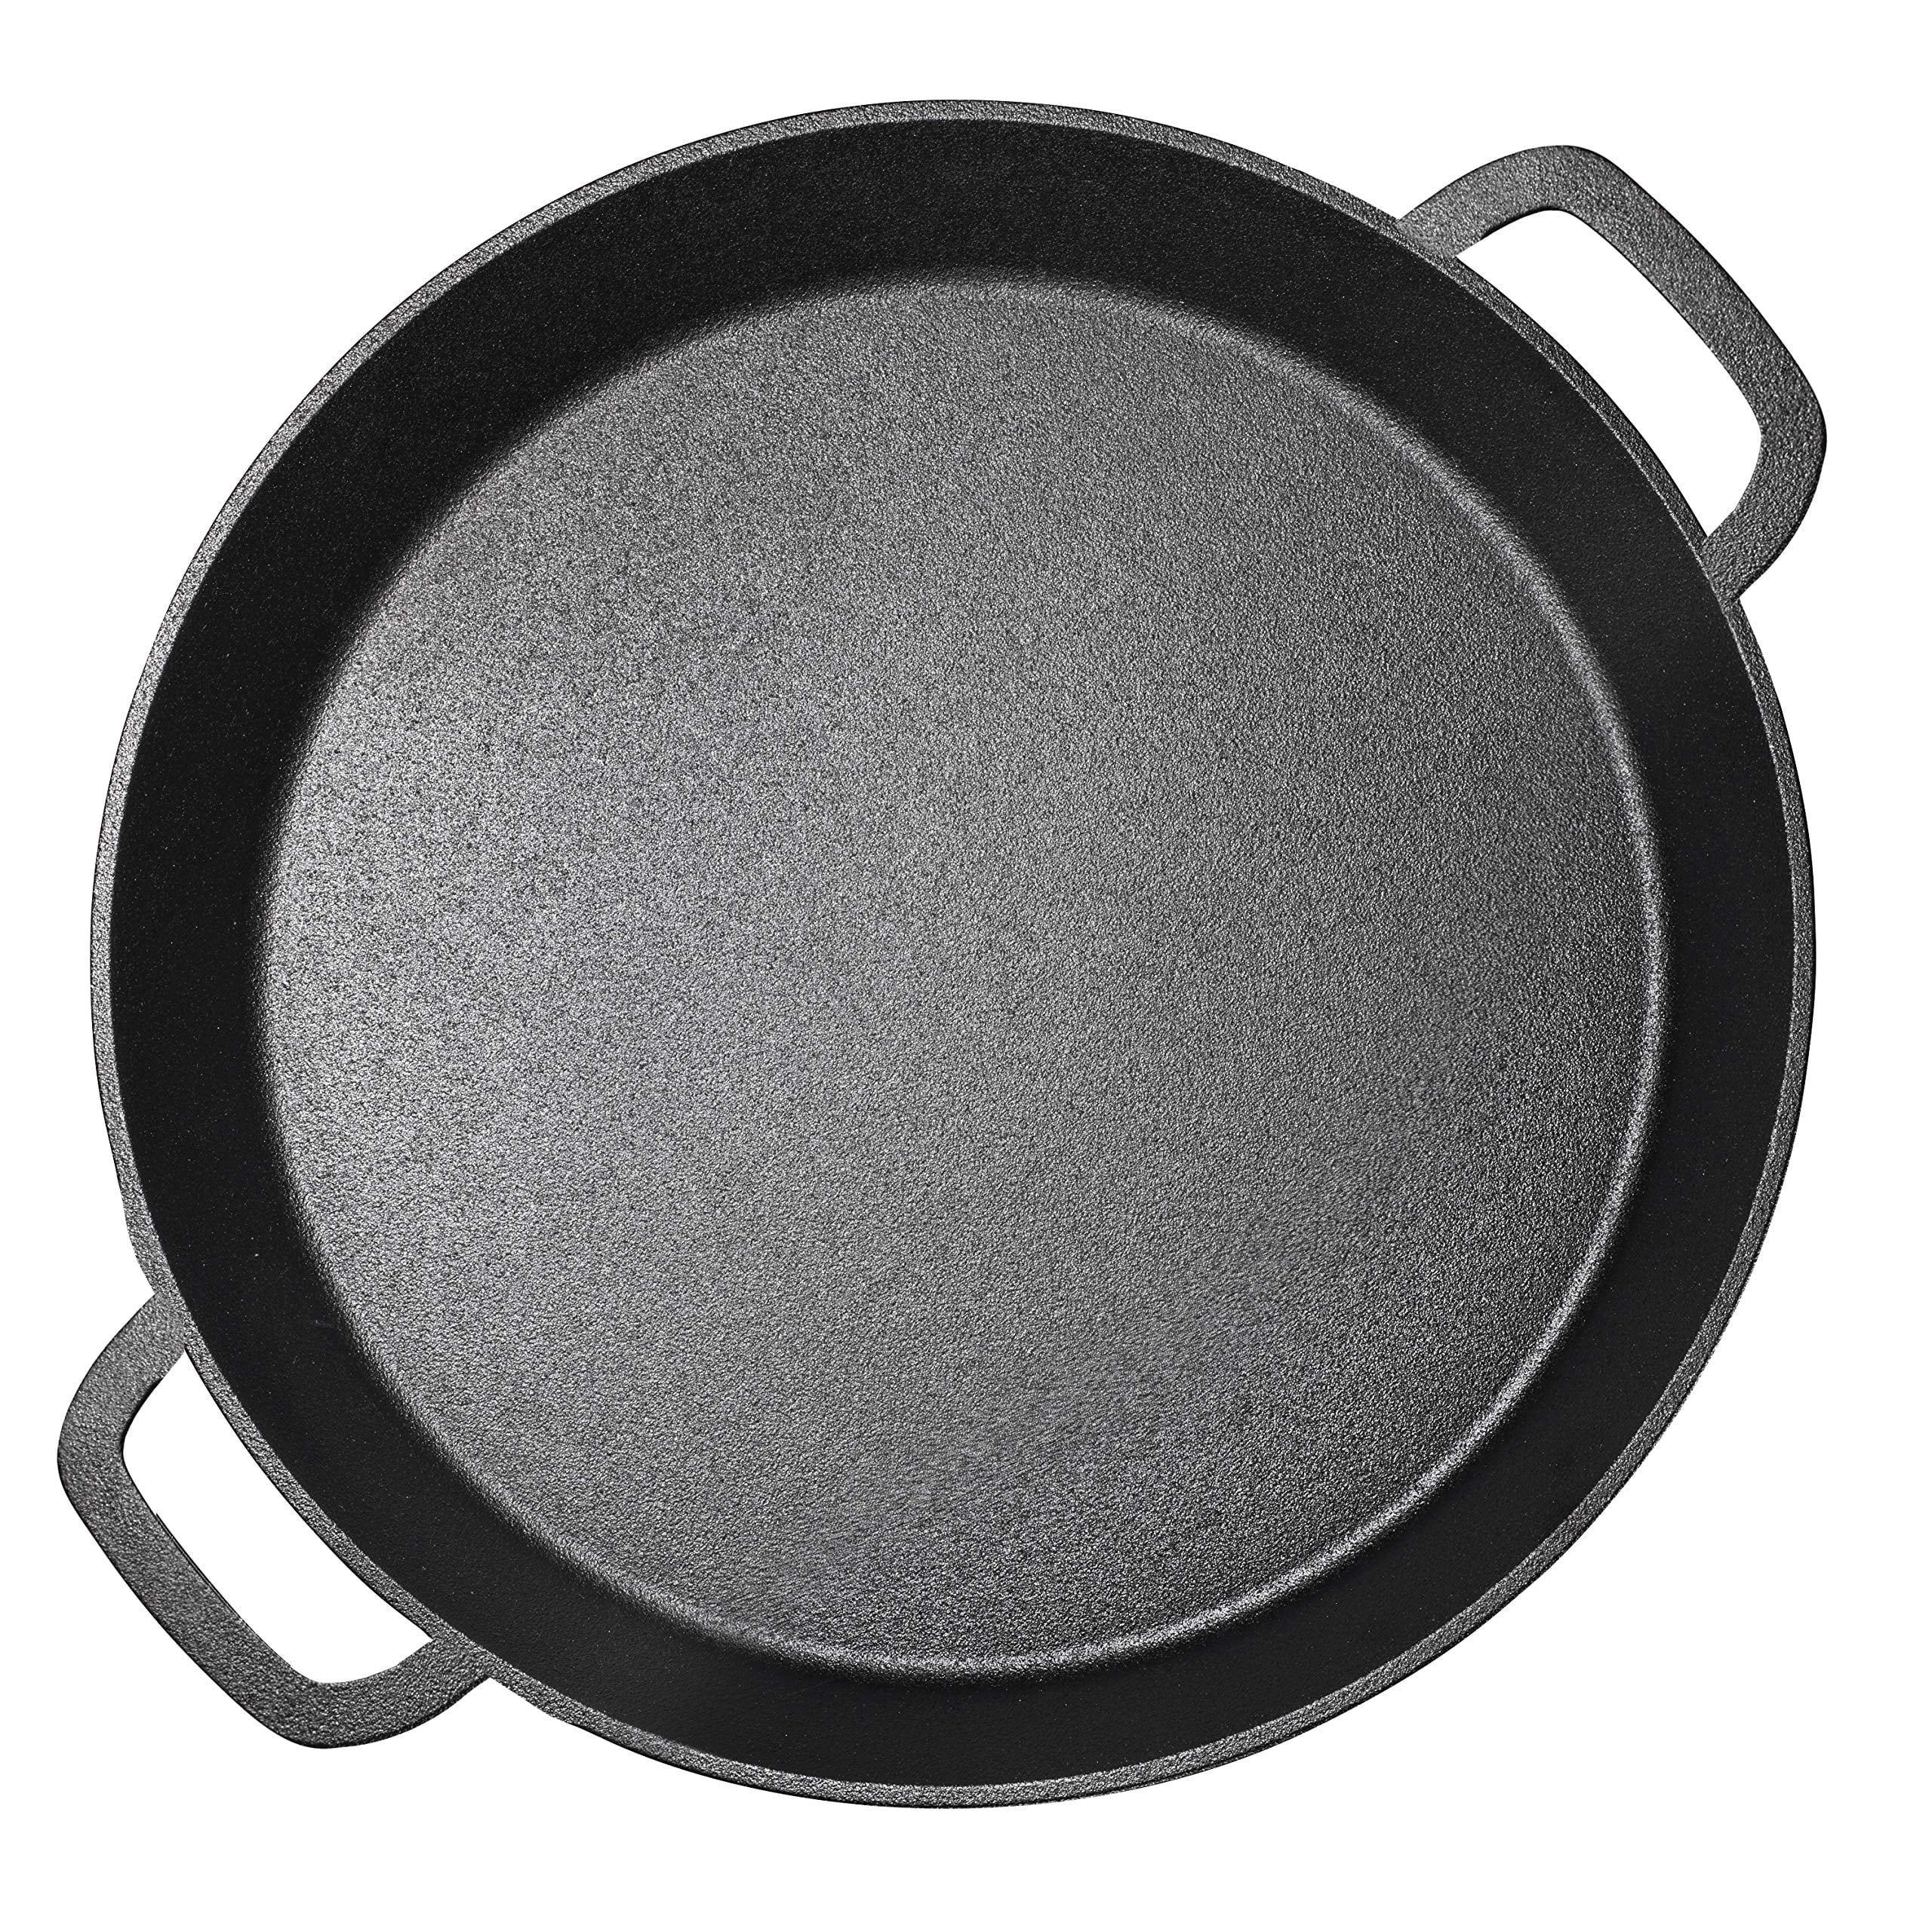 Bruntmor 6 x 4 Pre-seasoned Black Cast Iron Nonstick Frying Pan